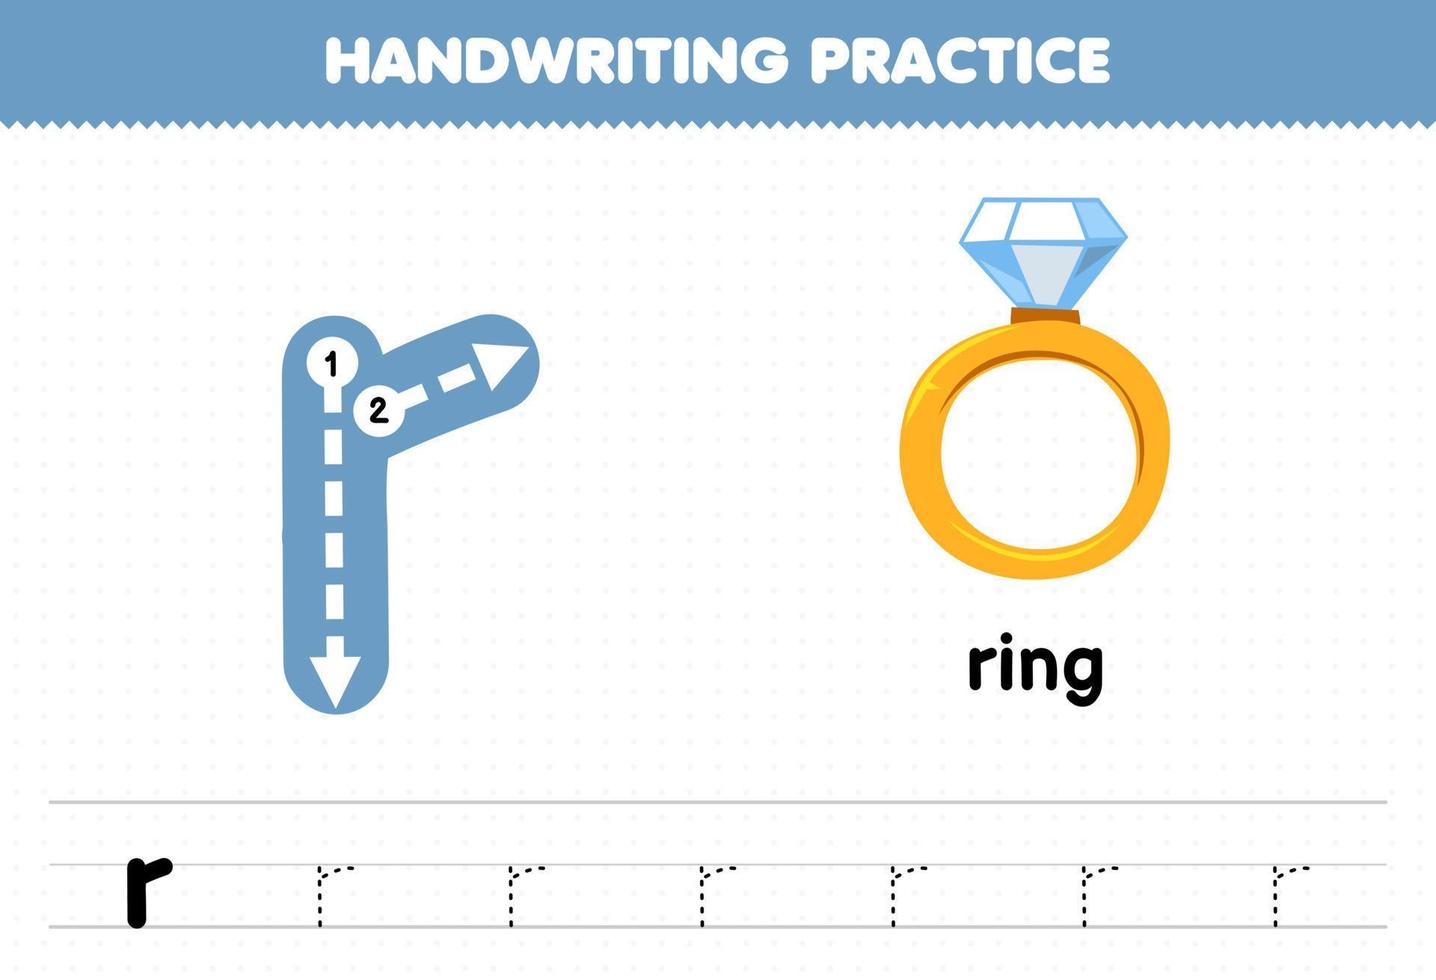 bildungsspiel für kinder handschriftübung mit kleinbuchstaben r für ring druckbares arbeitsblatt vektor